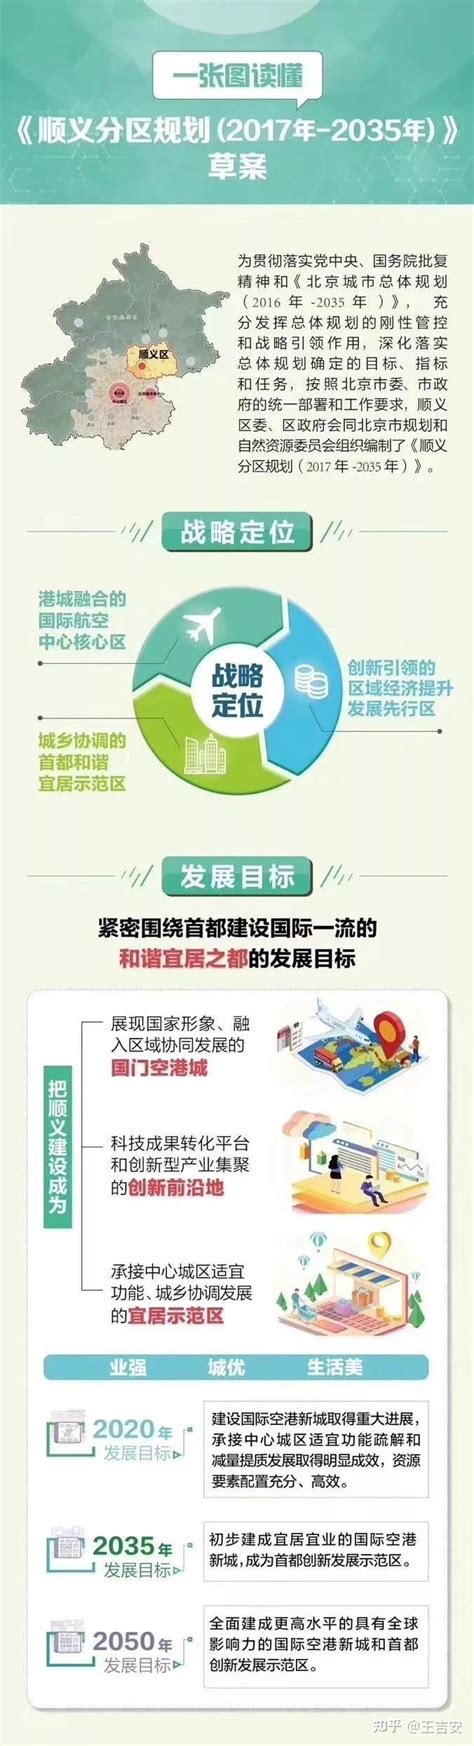 顺义分区规划全文发布 港城融合展现第一国门新形象-市场行情 -中国网地产